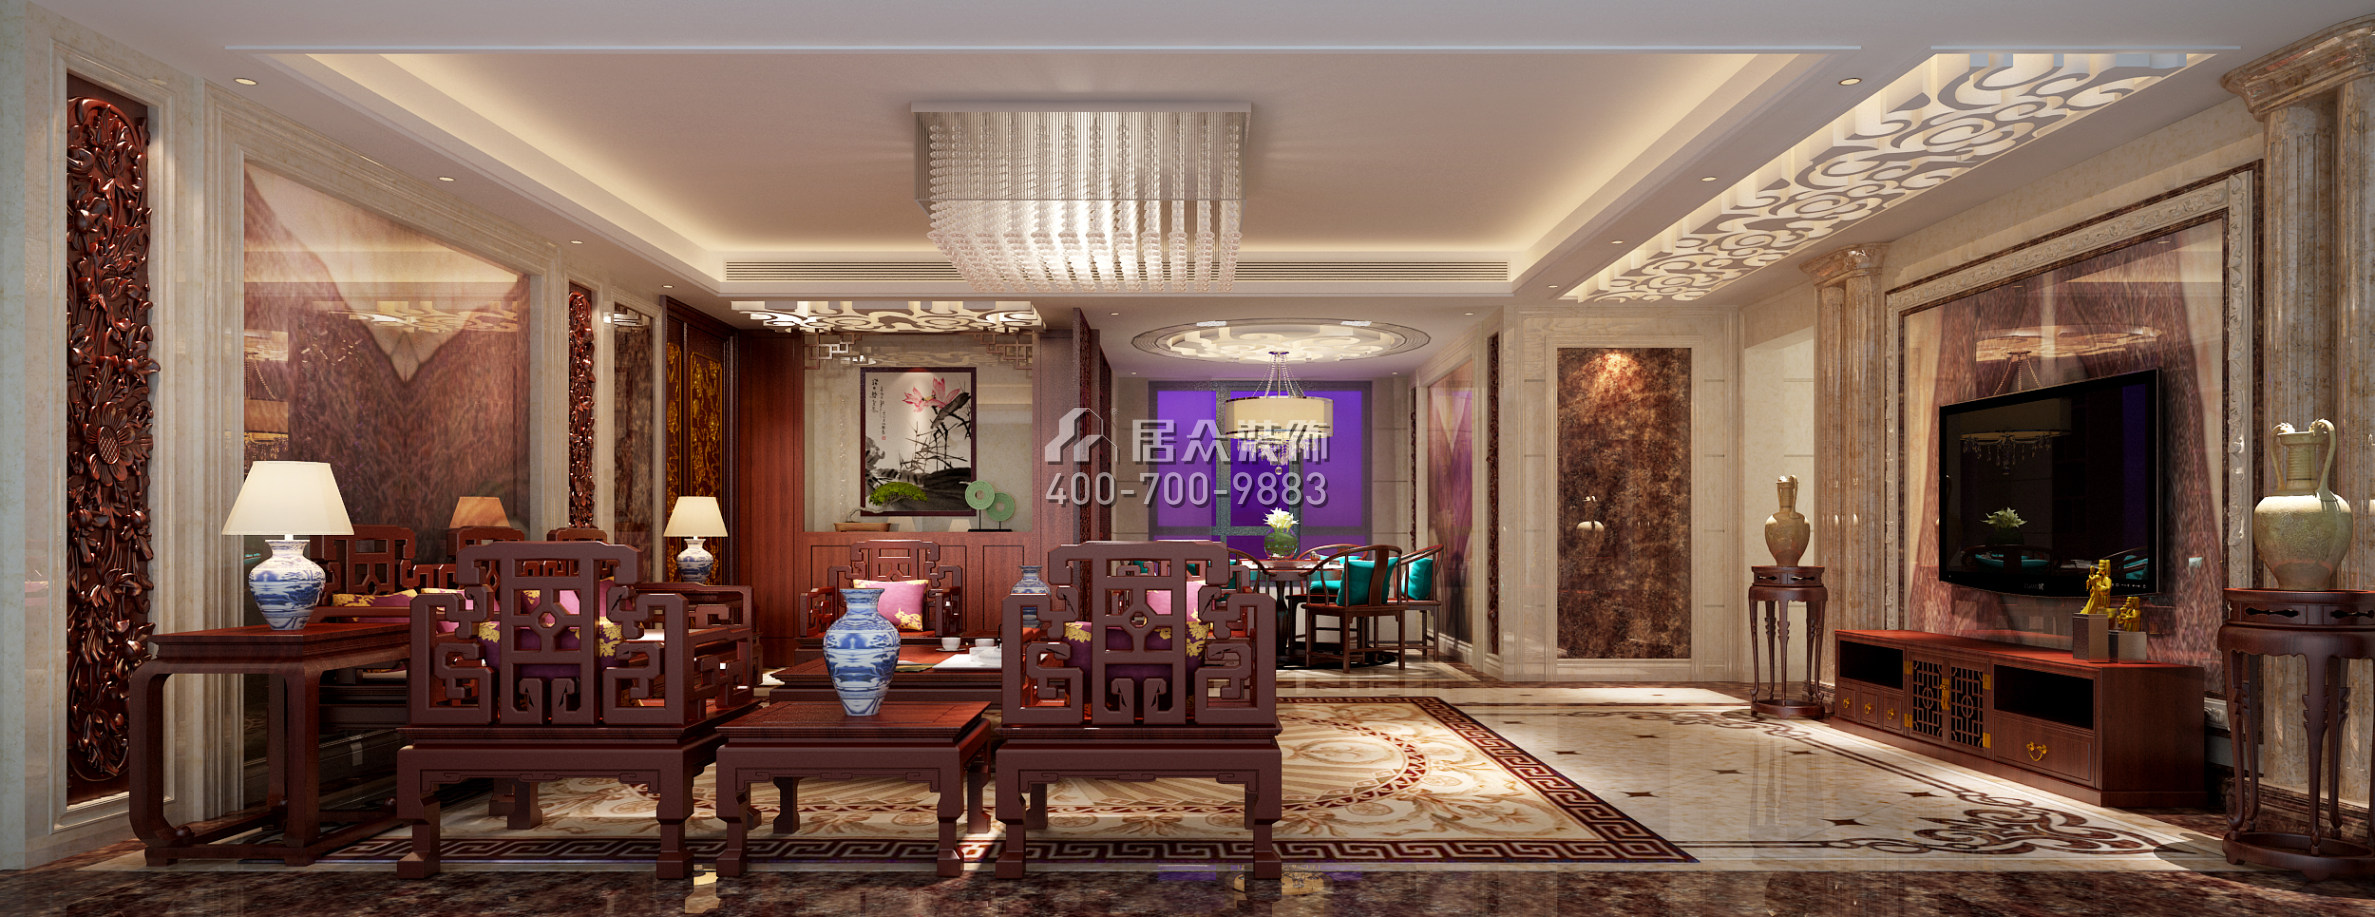 中洲中央公园160平方米中式风格平层户型客厅装修效果图